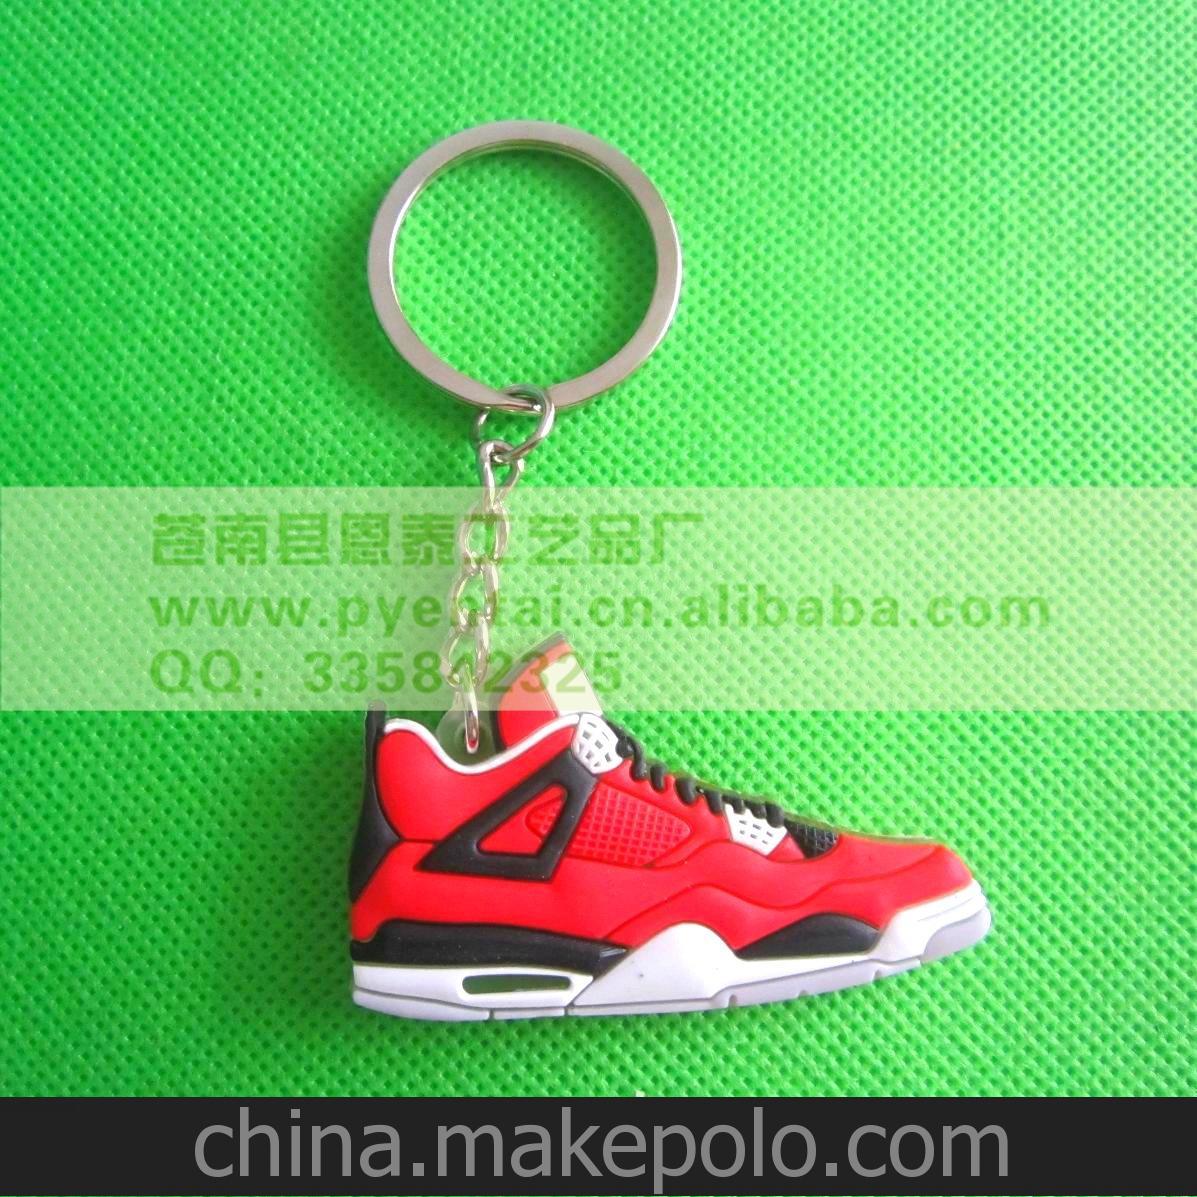 Air Jordan 4 Green Glow 灰綠螢光綠籃球鞋鑰匙扣